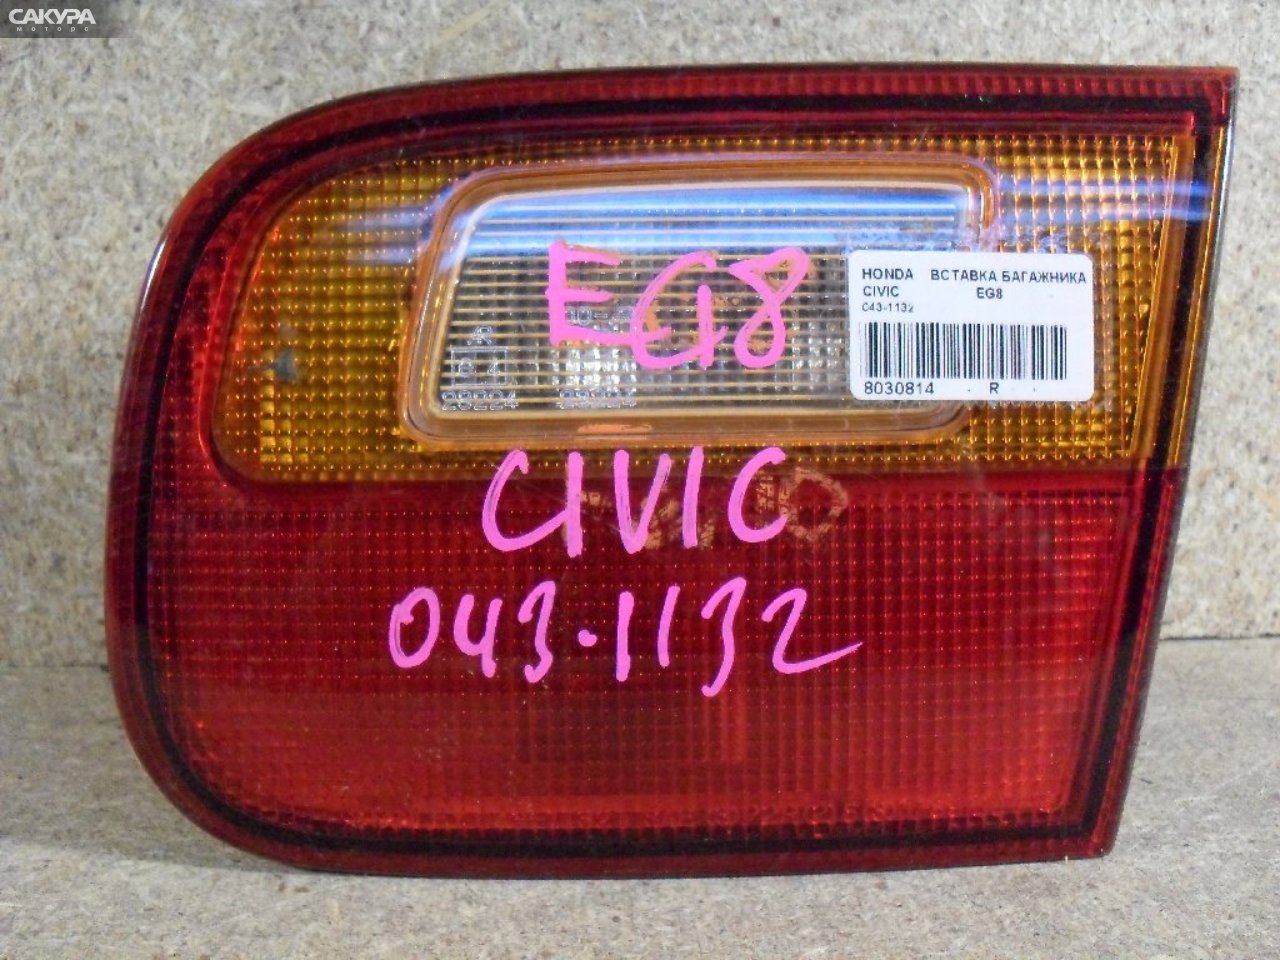 Фонарь вставка багажника правый Honda Civic Ferio EG8 043-1132: купить в Сакура Абакан.